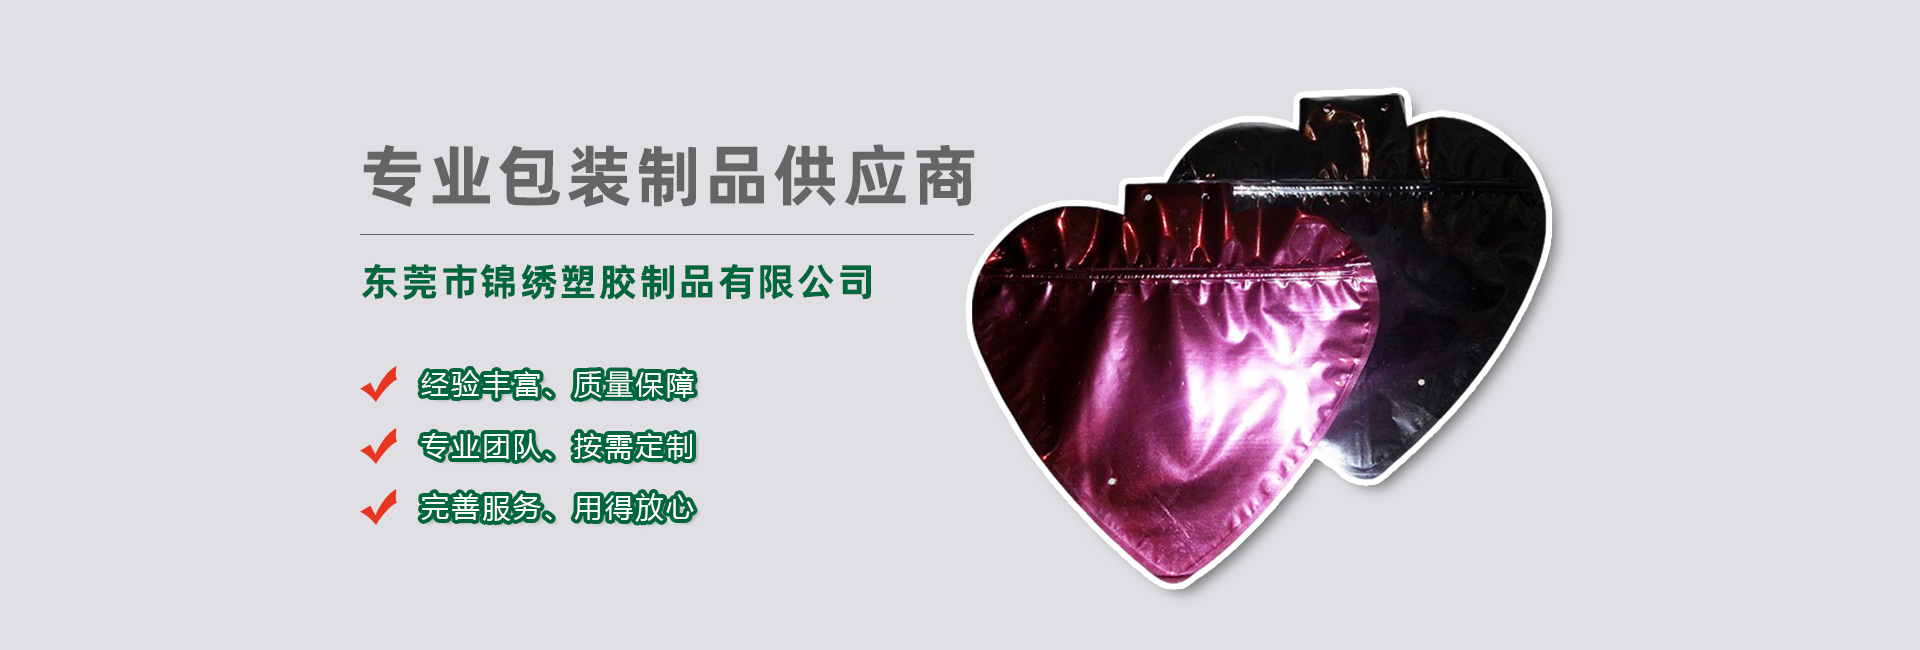 株洲食品袋banner